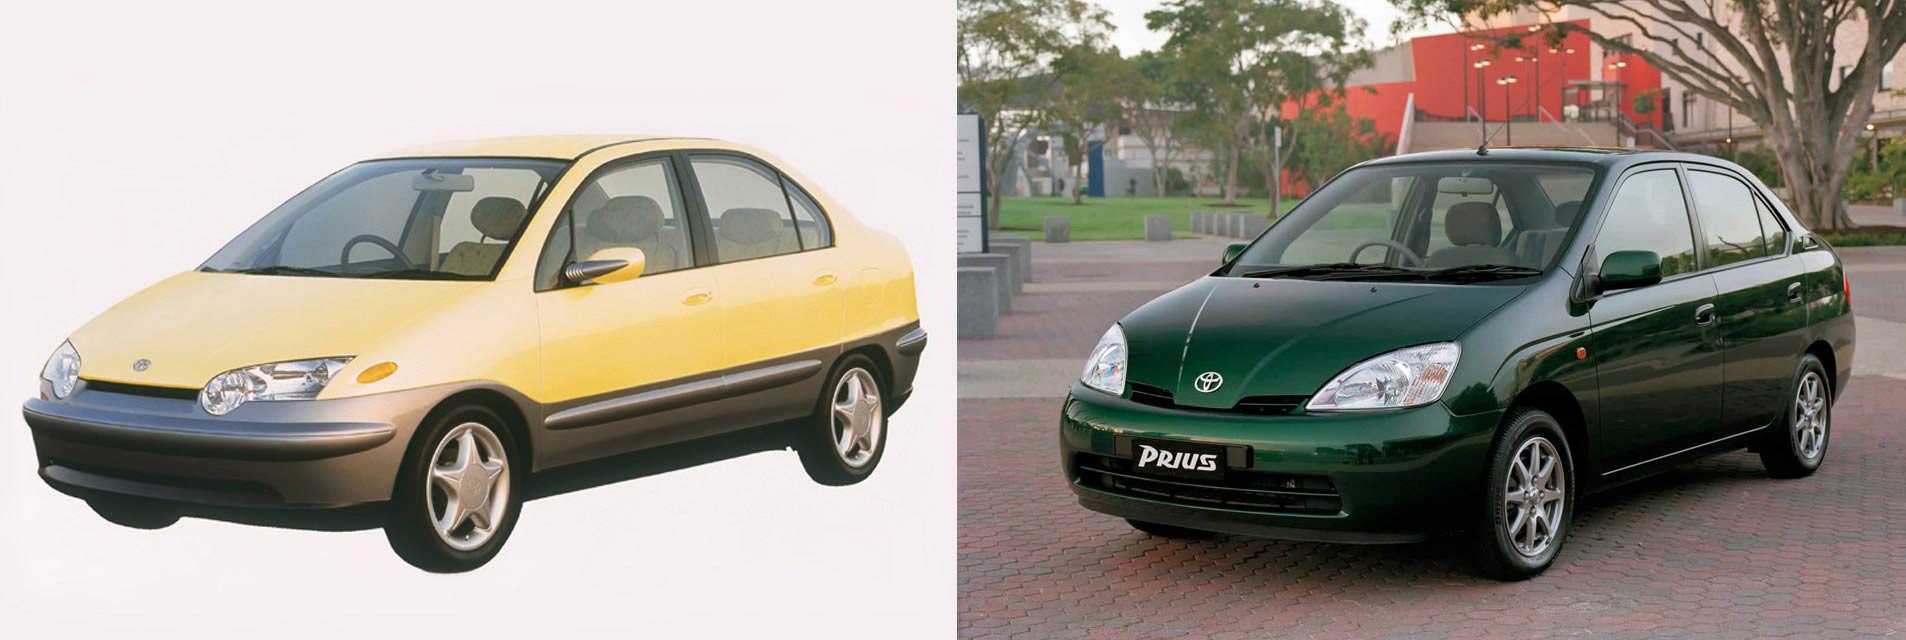 Automobilové milníky, aneb čím jsme tehdy žili - Hybridní Prius